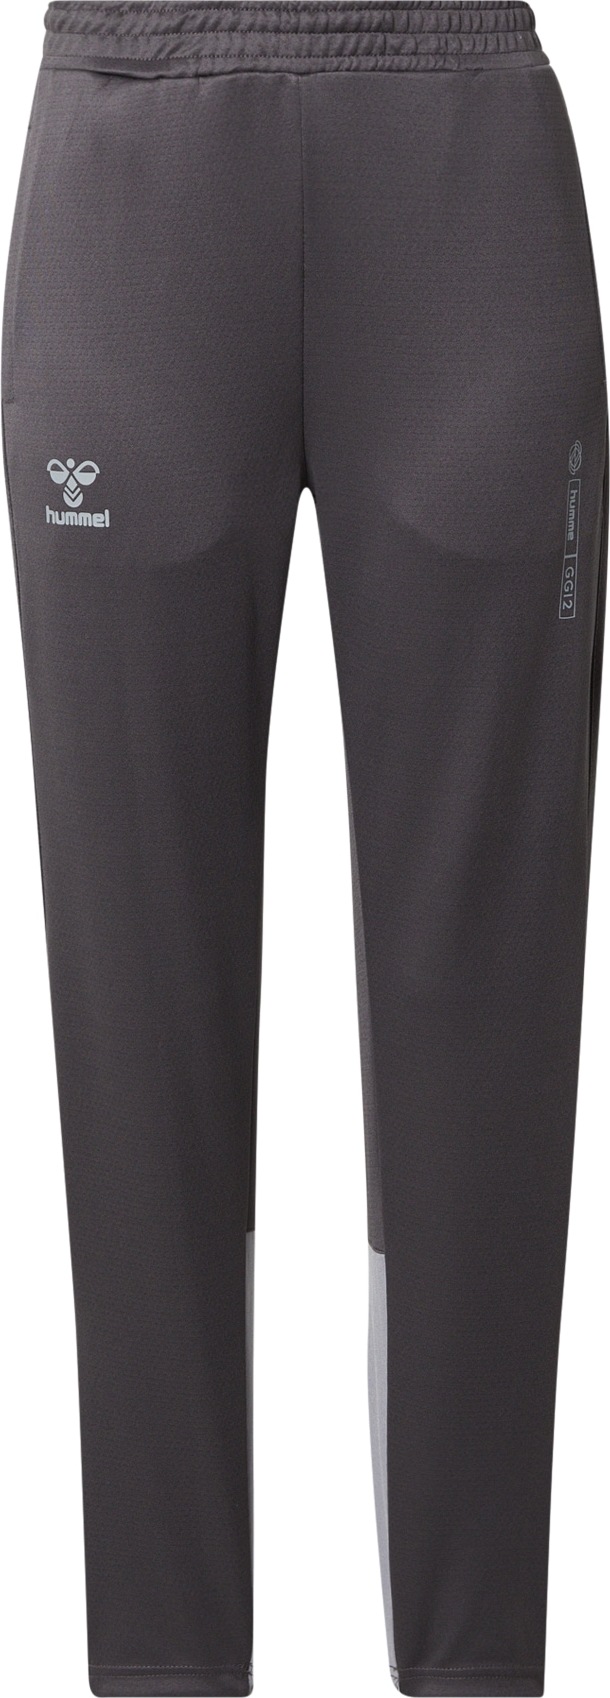 Hummel Sportovní kalhoty 'GG12 Action' tmavě šedá / šedá